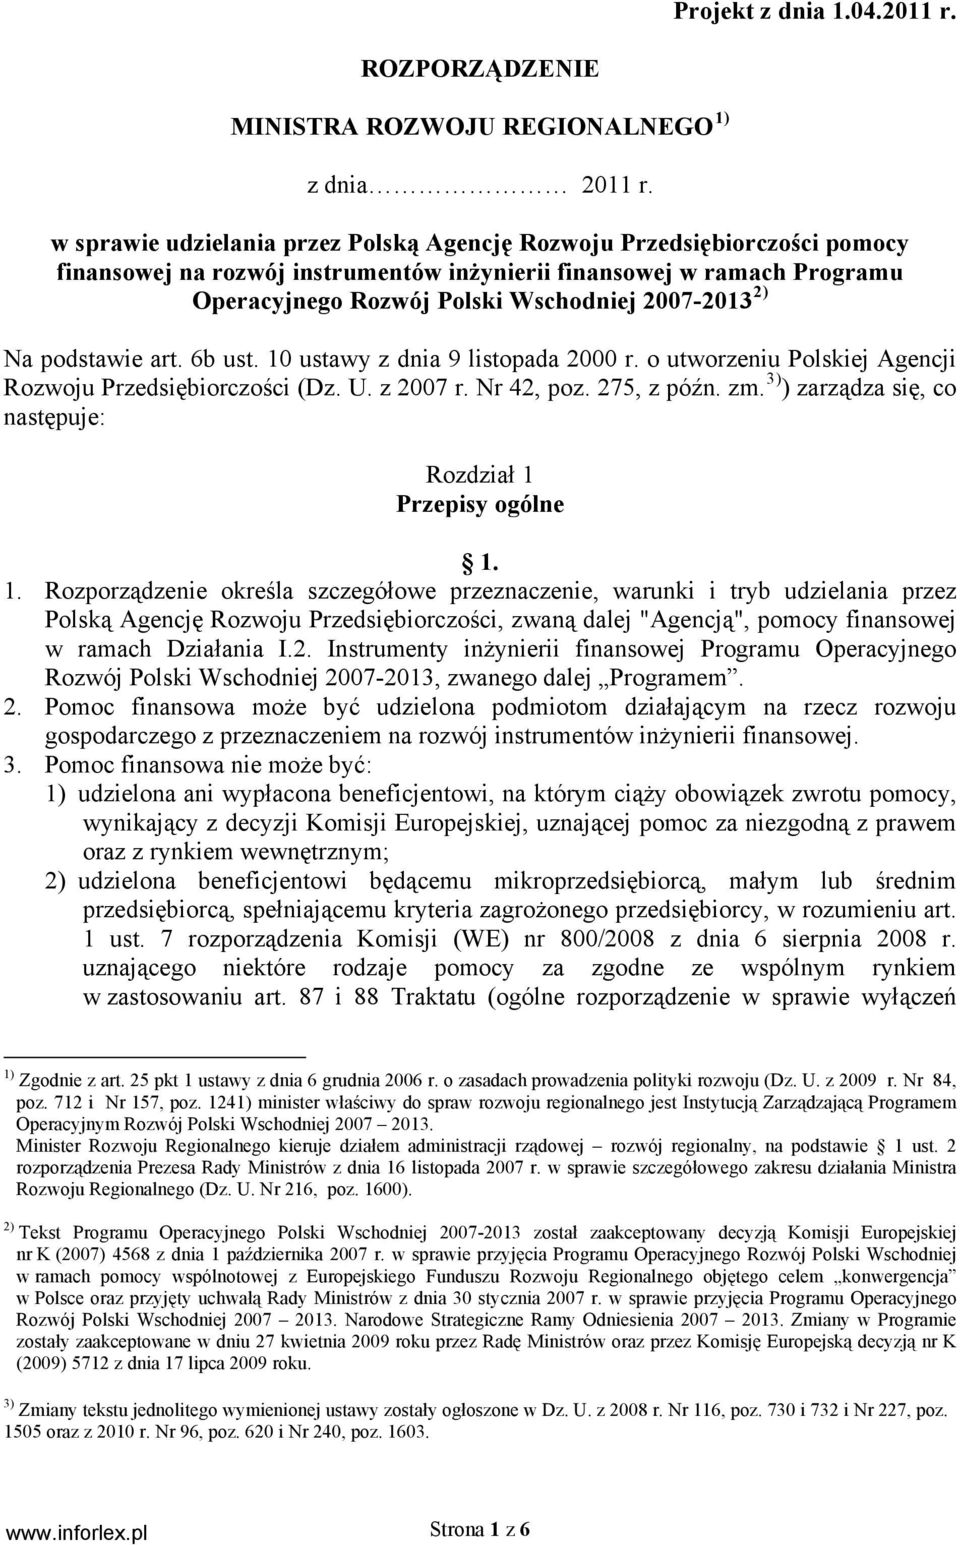 2) Na podstawie art. 6b ust. 10 ustawy z dnia 9 listopada 2000 r. o utworzeniu Polskiej Agencji Rozwoju Przedsiębiorczości (Dz. U. z 2007 r. Nr 42, poz. 275, z późn. zm.